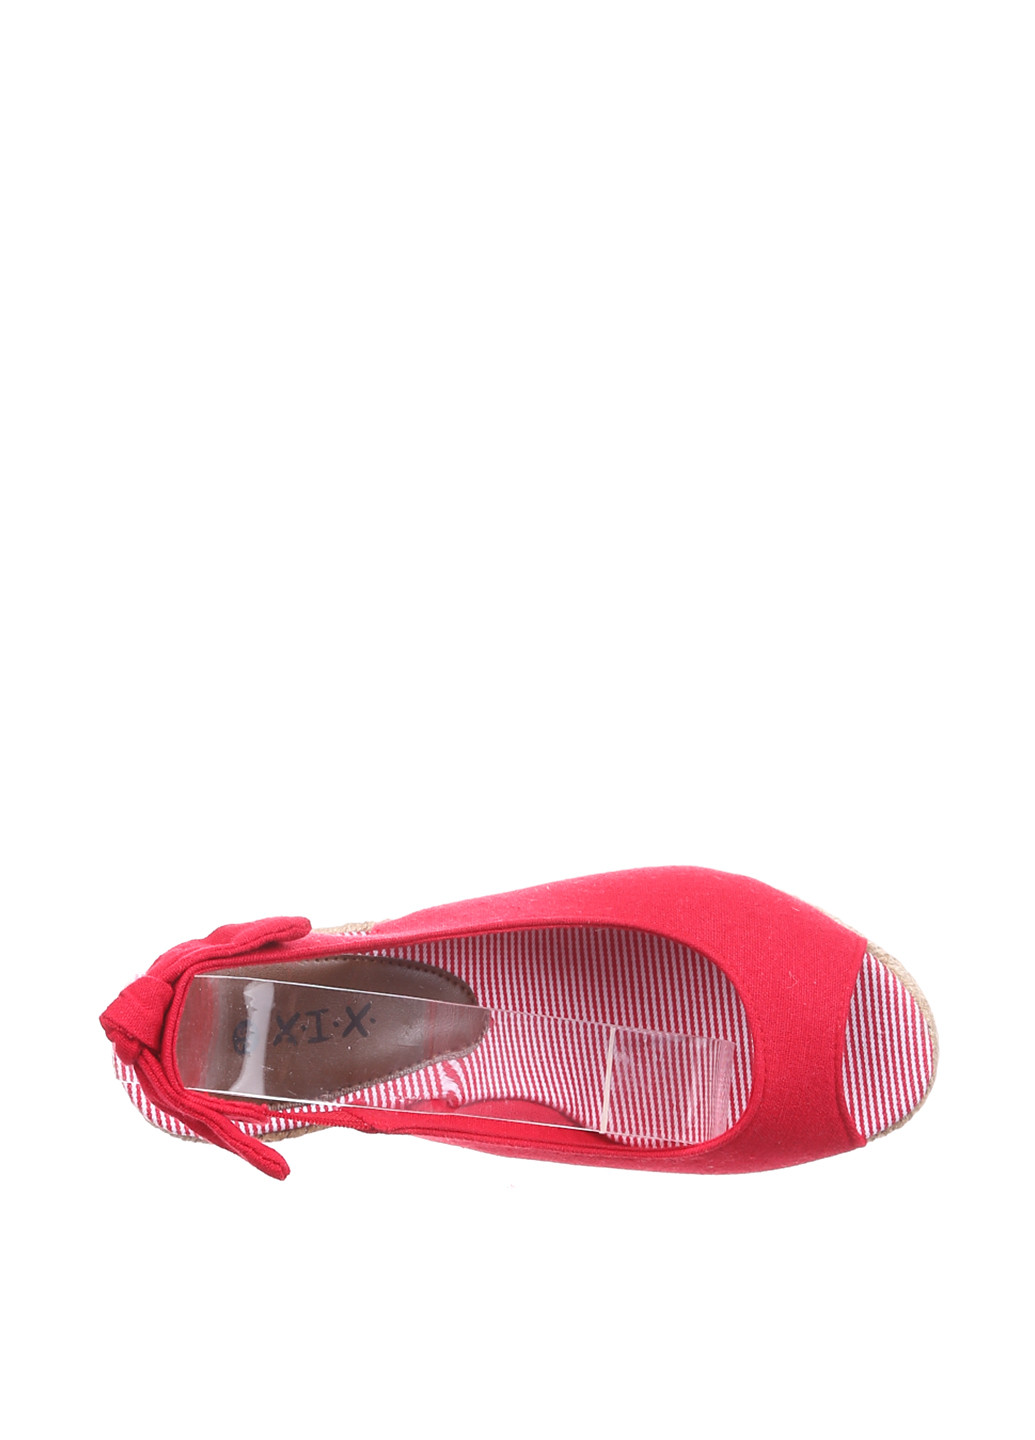 Красные босоножки Cortina с ремешком на плетеной подошве